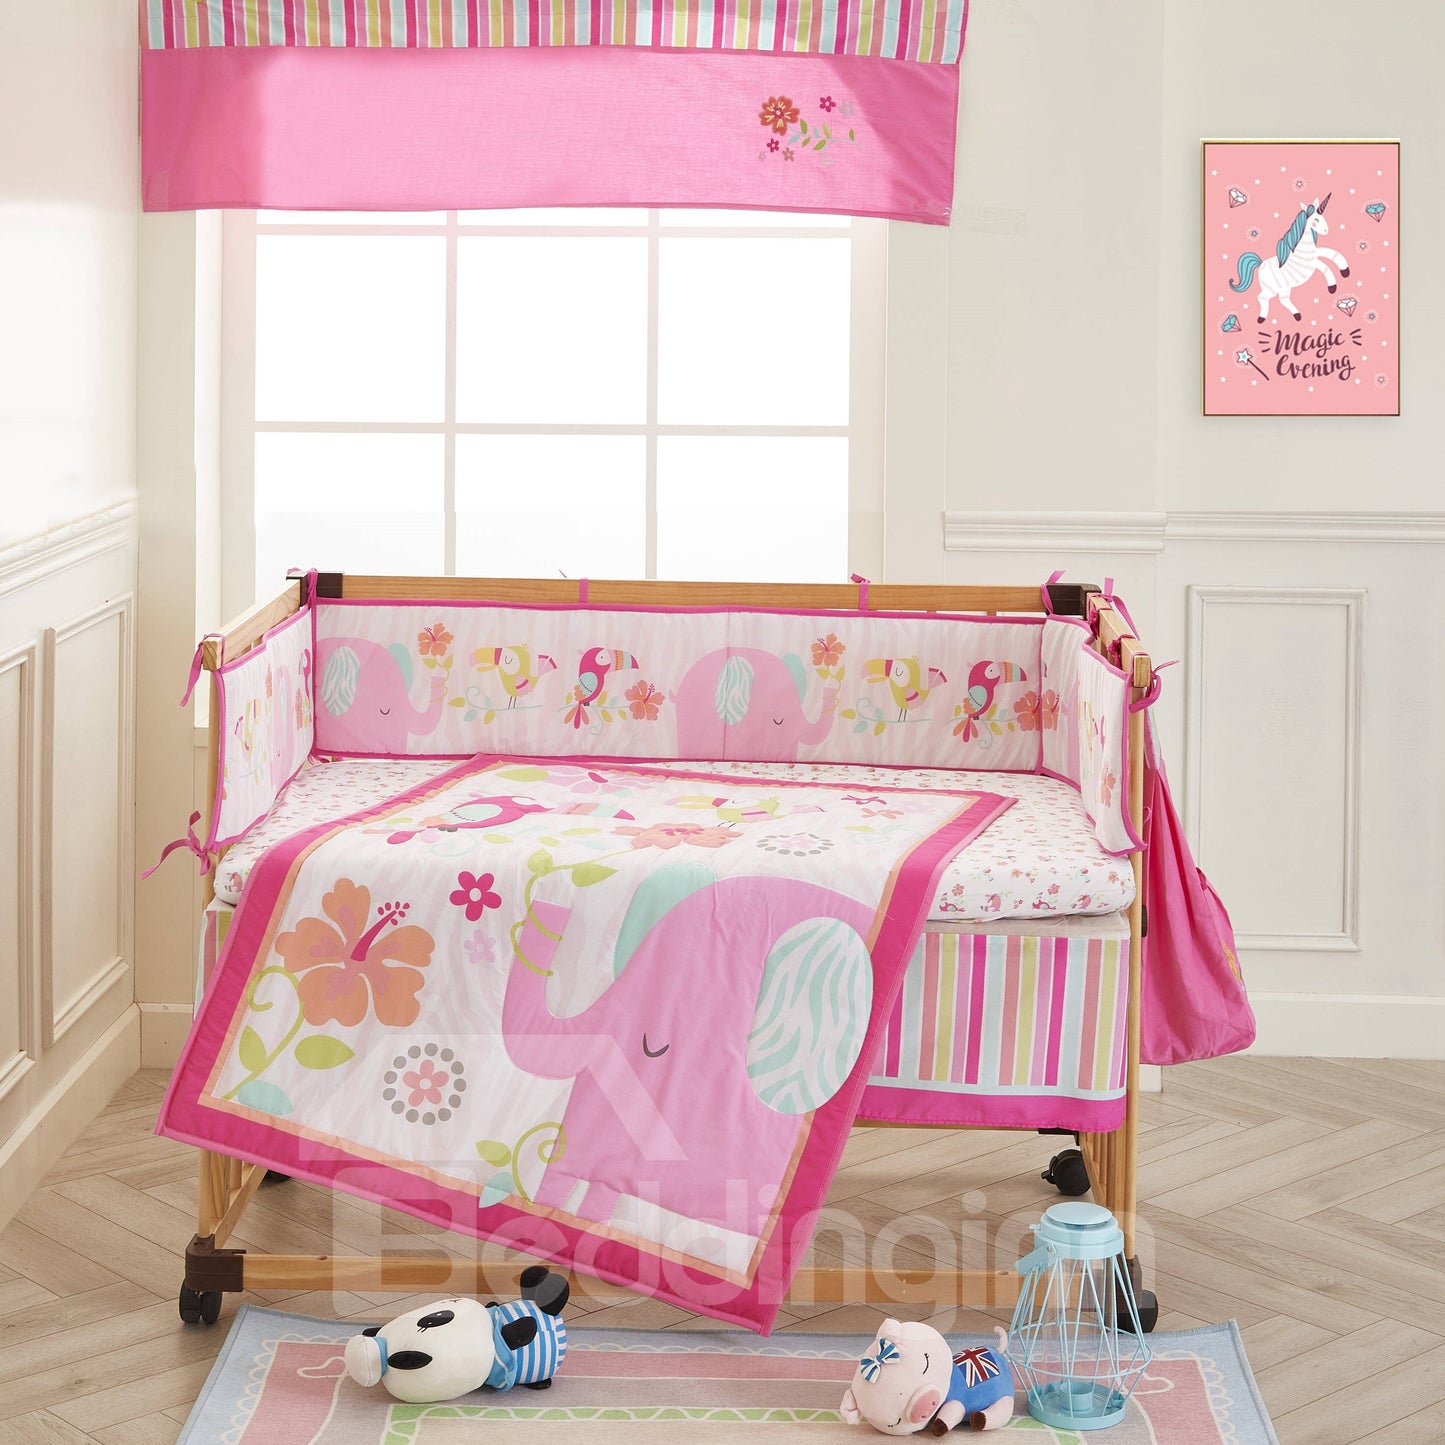 6-teilige Bettwäsche-Sets für Babybetten in Rosa mit Elefanten- und Blumenmuster